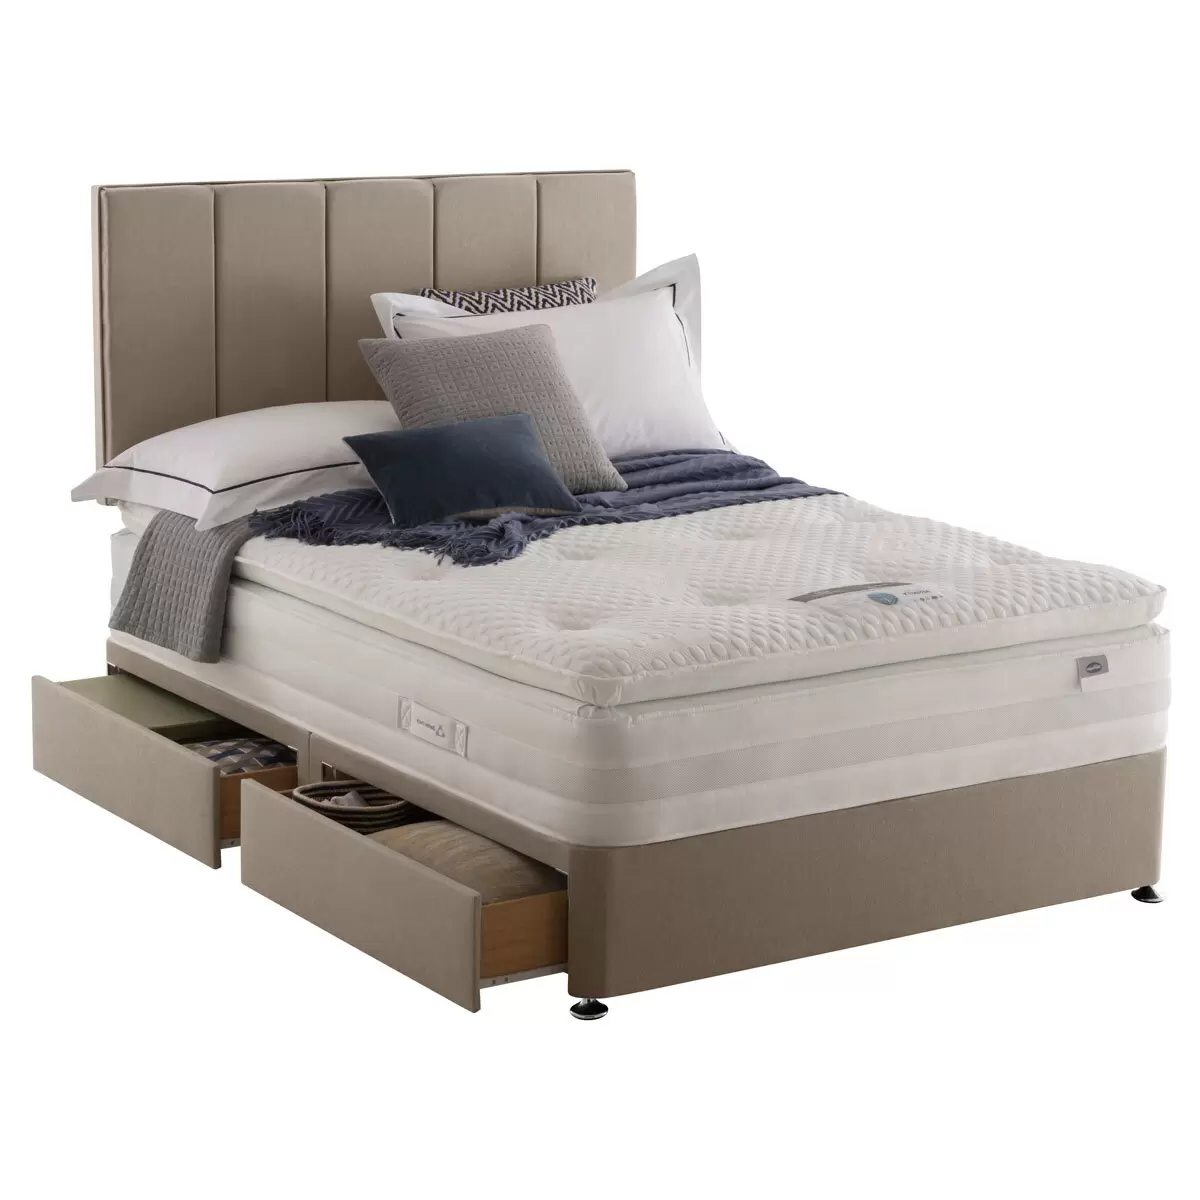 Silentnight Geltex 1850 Sandstone Mattress & Divan Bed Set - King Size